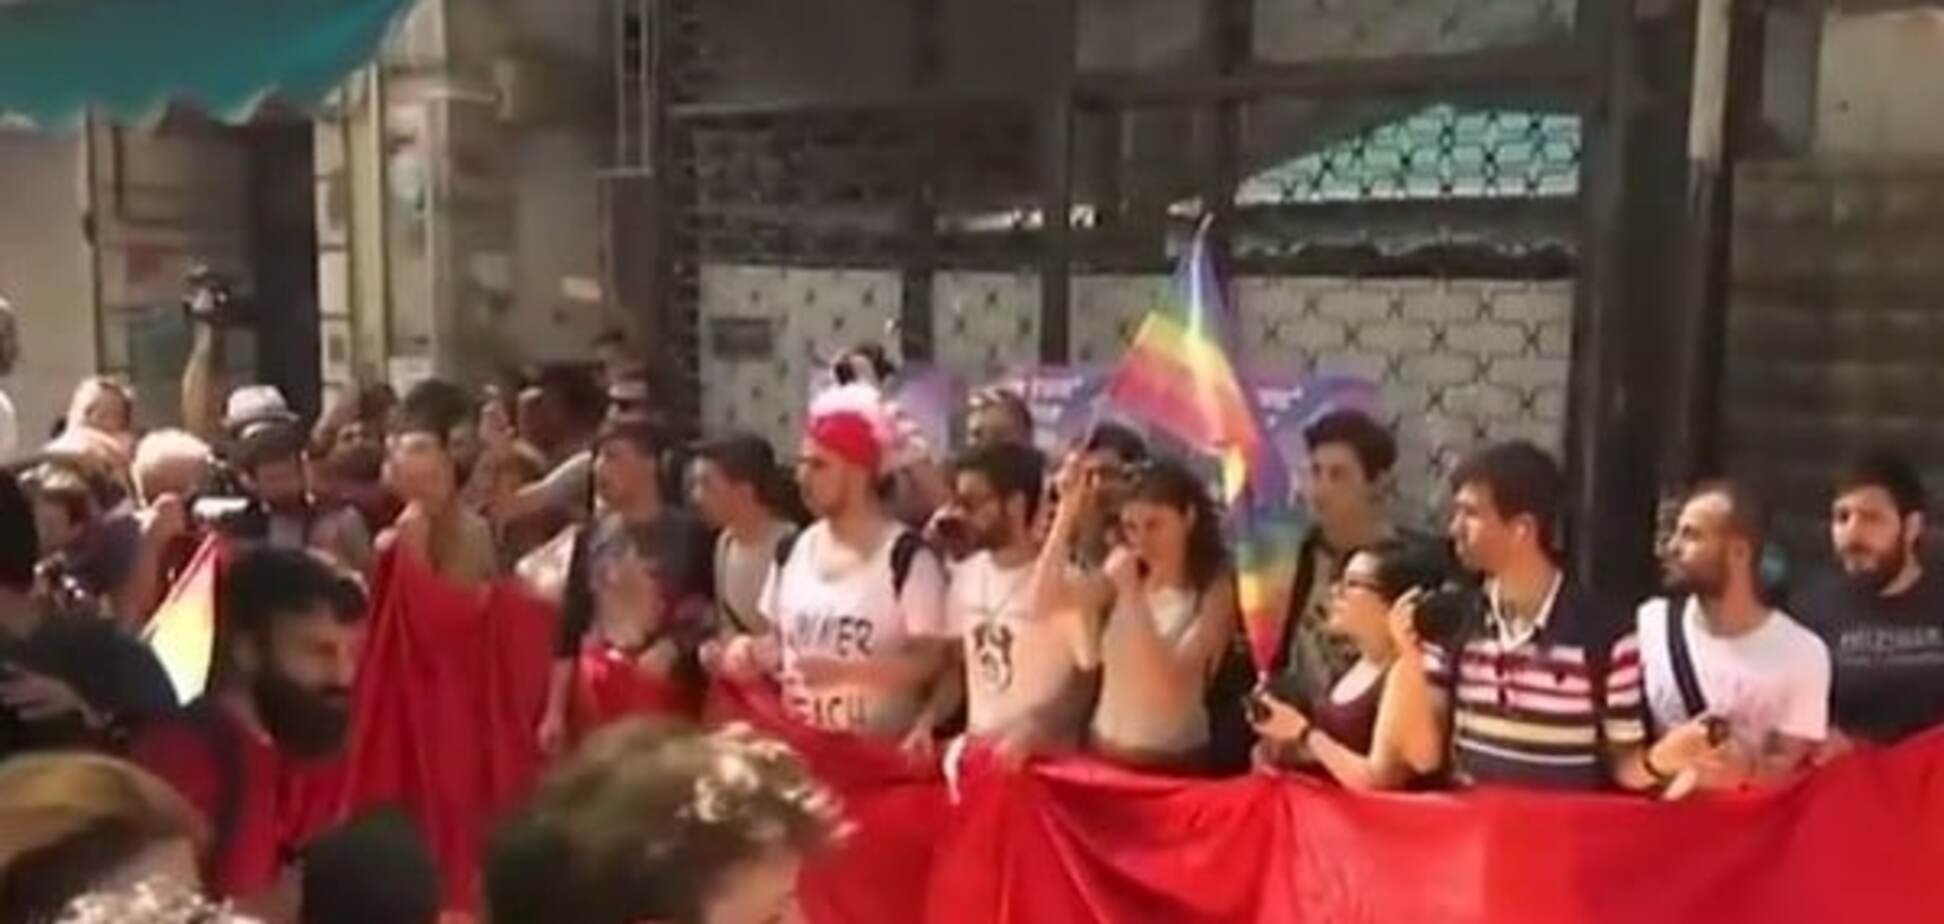 ЛГБТ-марш